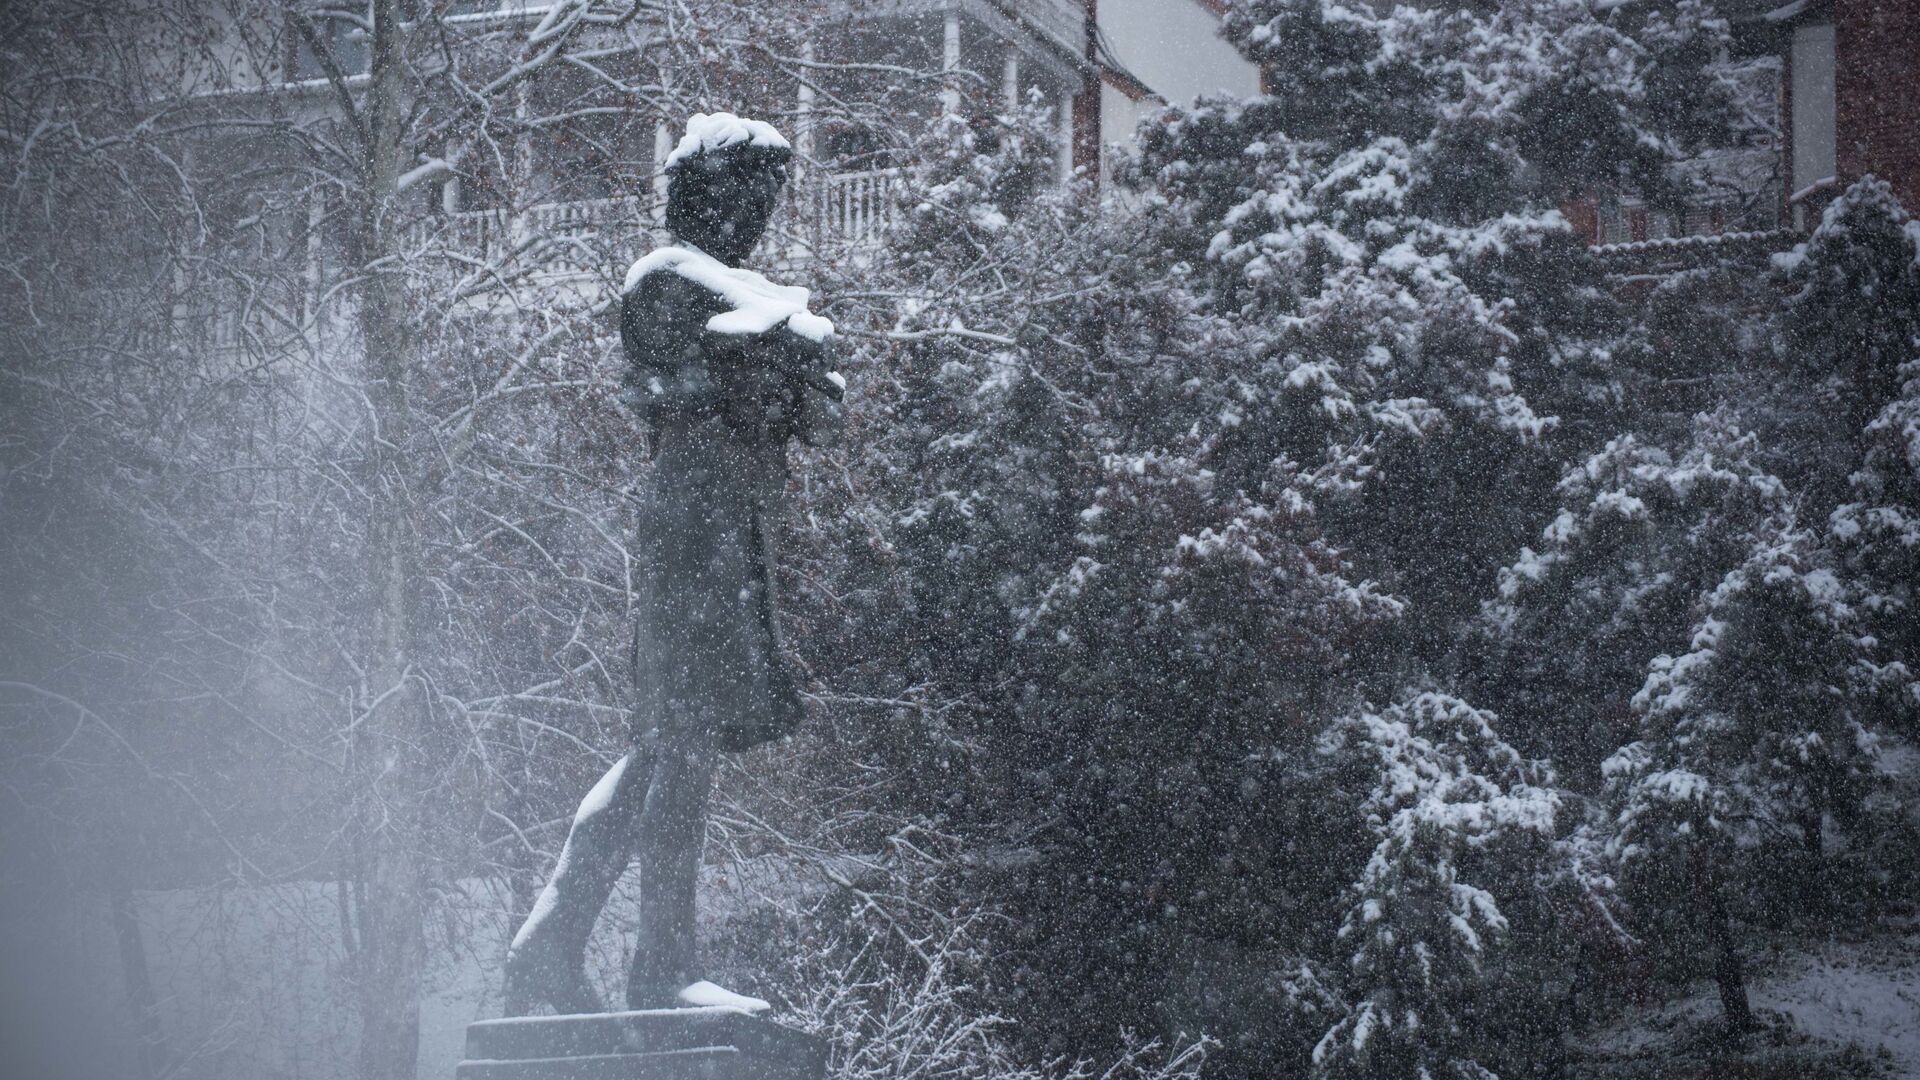 Погода в Тбилиси - снег в феврале, памятник Николозу Бараташвили в старом городе - Sputnik Грузия, 1920, 29.11.2021